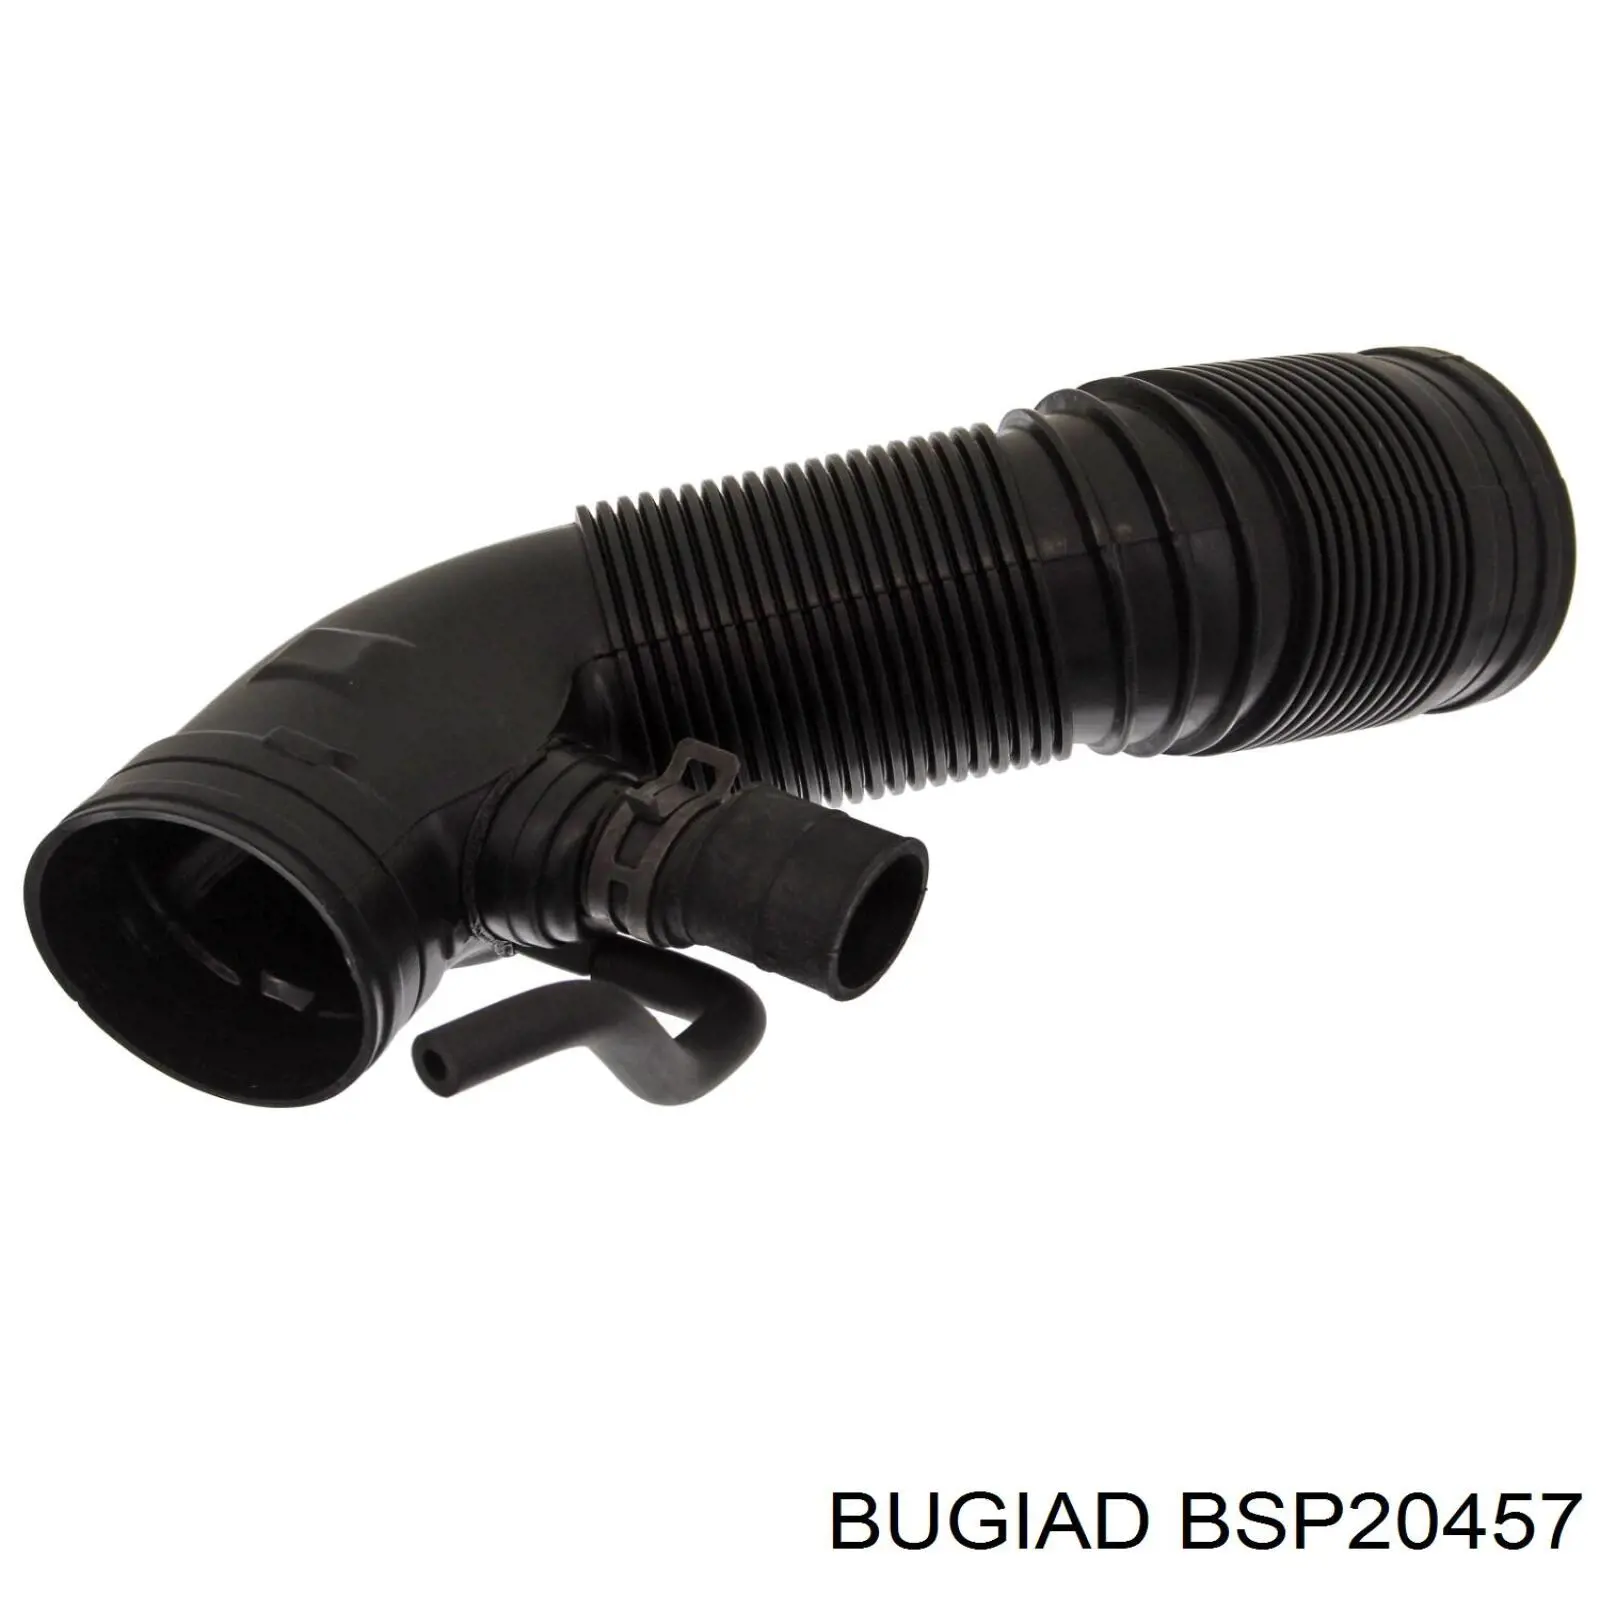 BSP20457 Bugiad manguito, alimentación de aire